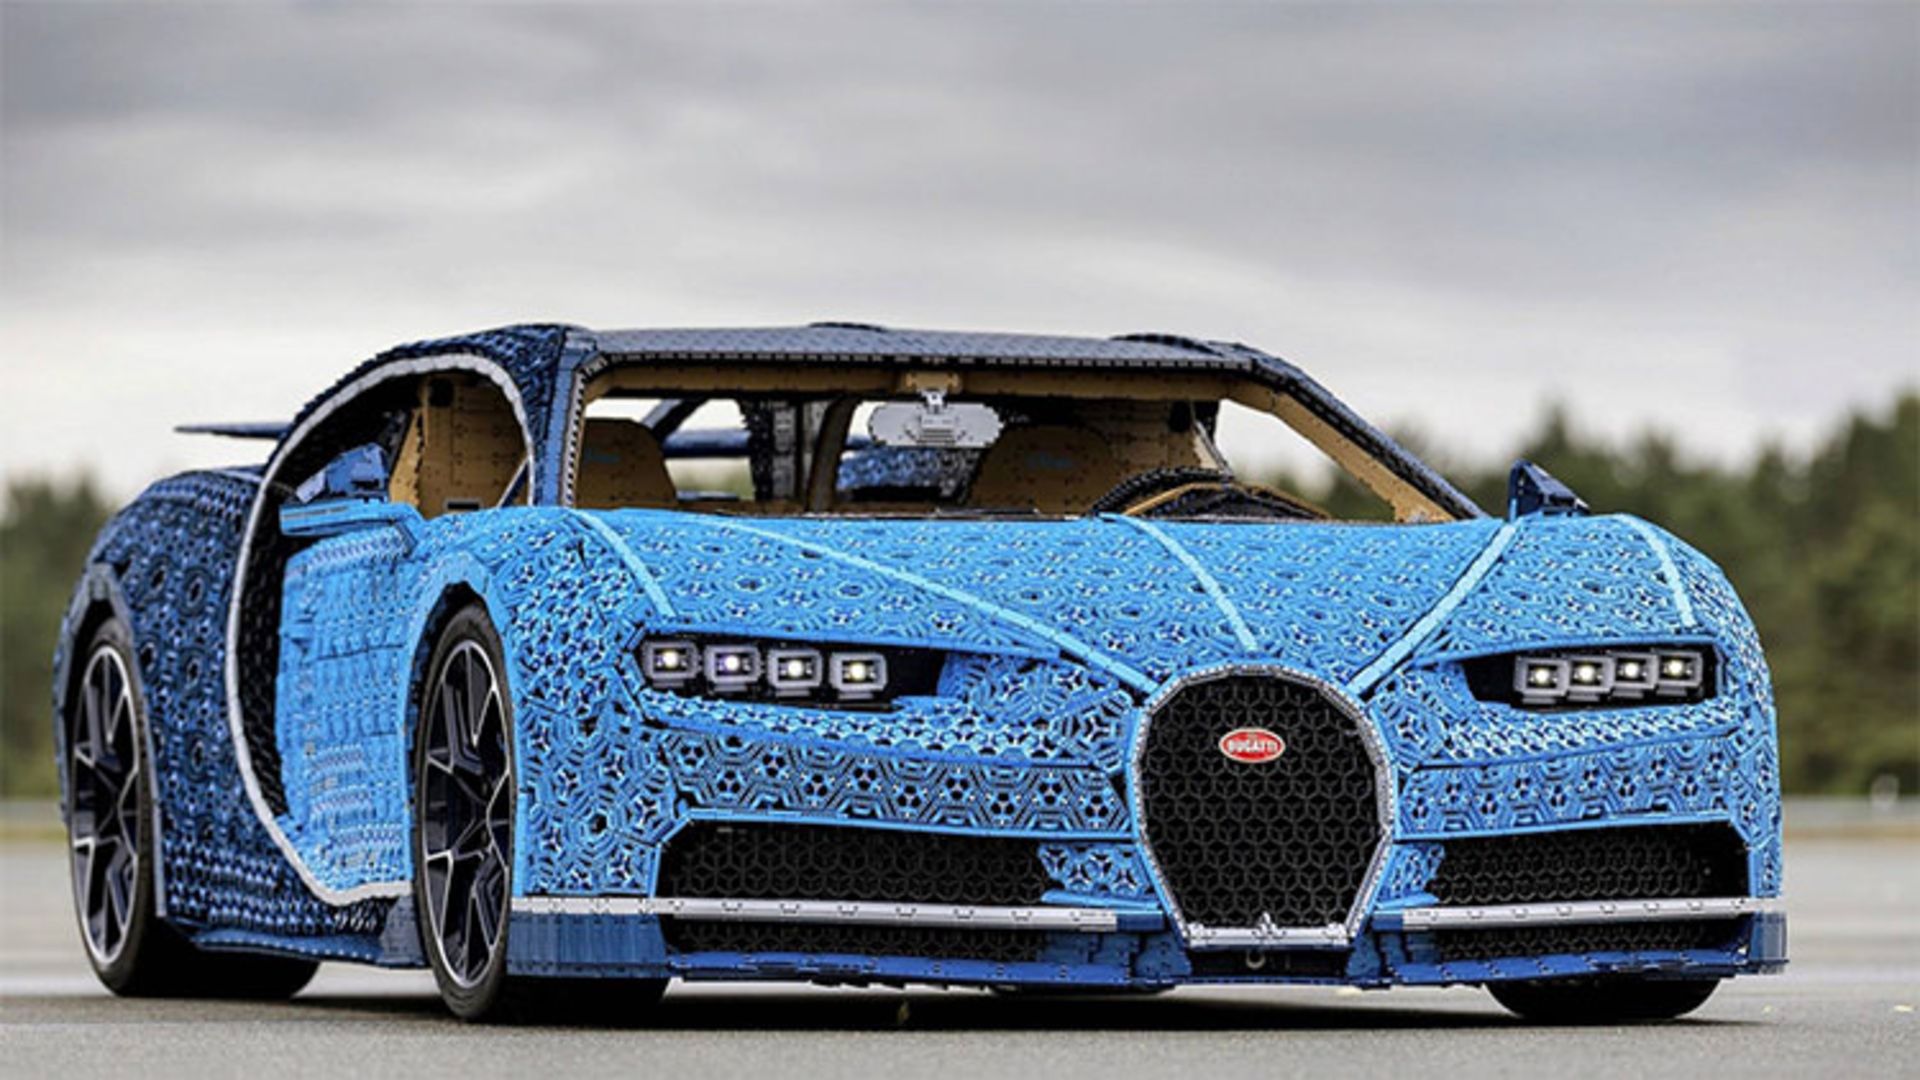 بوگاتی شیرون لگو / Bugatti Chiron Lego